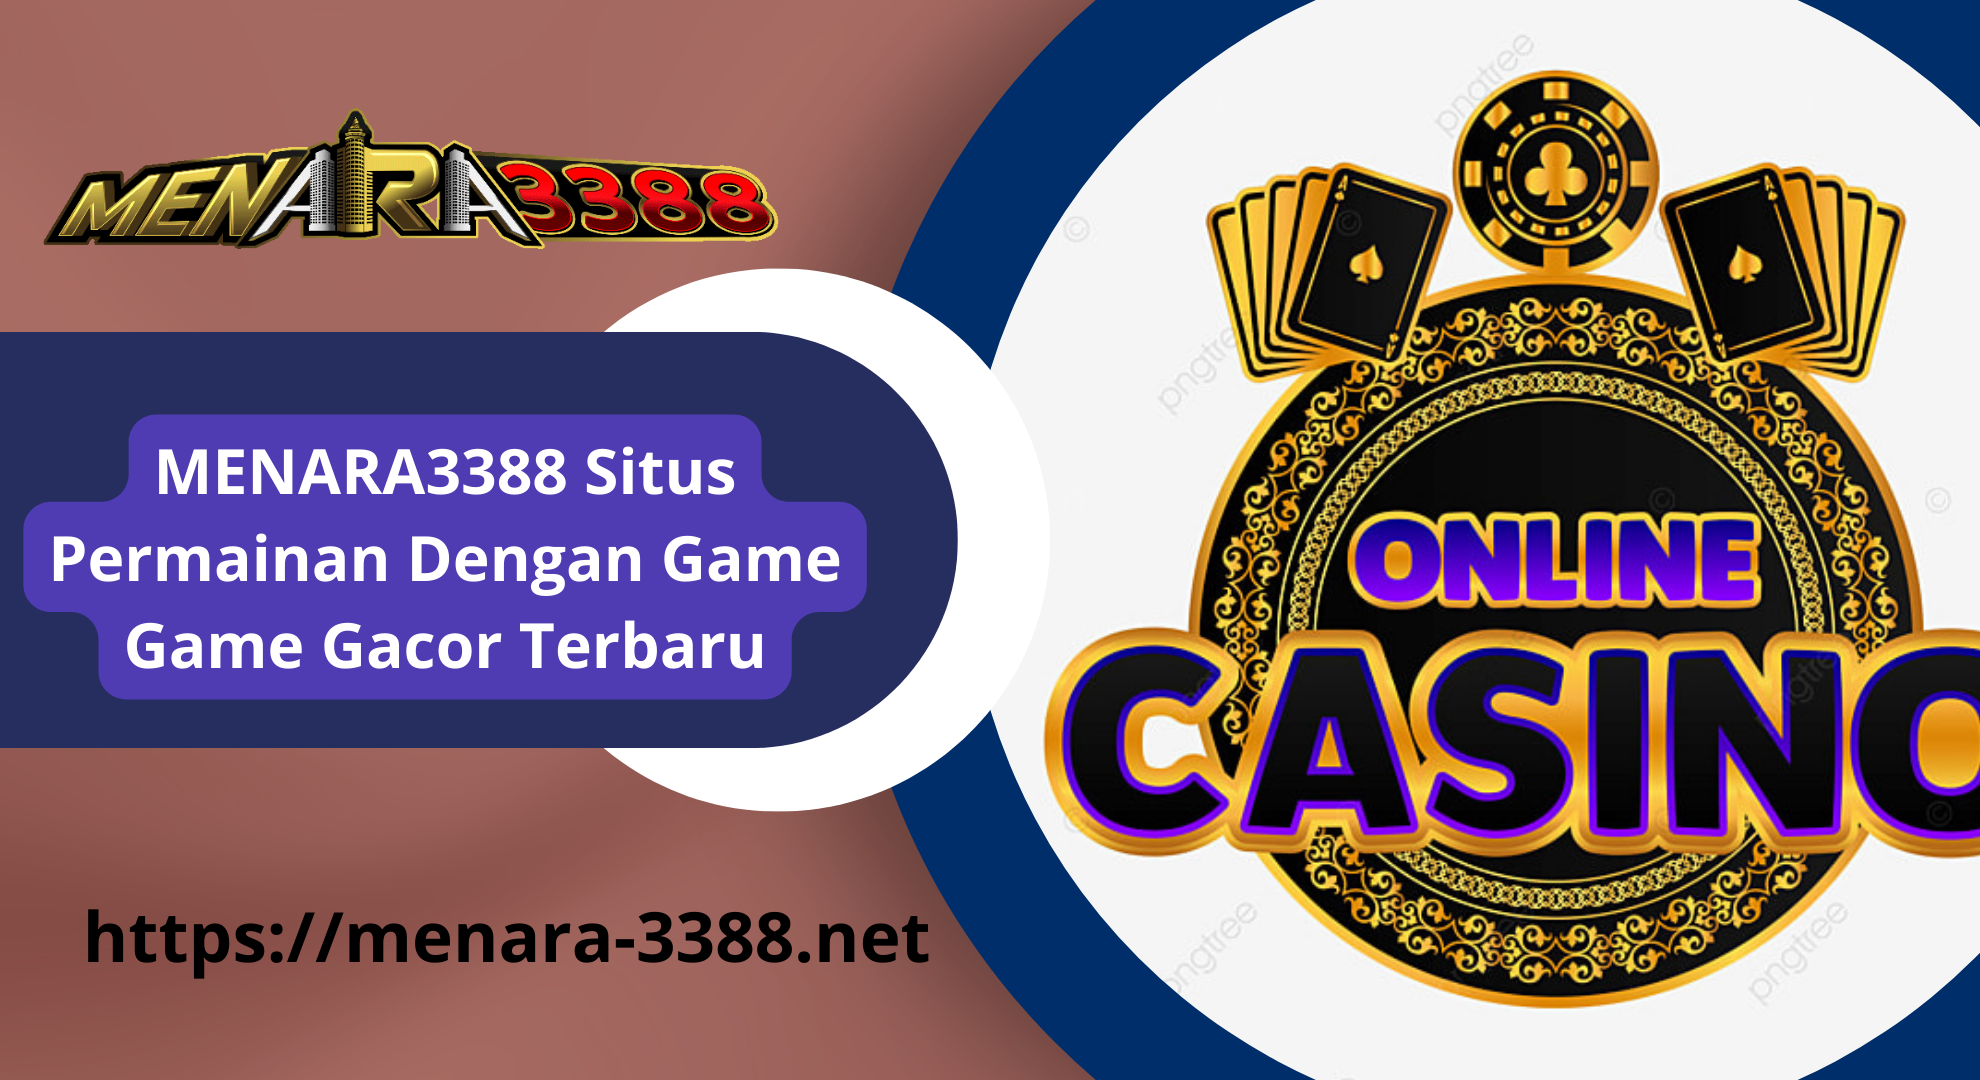 MENARA3388-Situs-Permainan-Dengan-Game-Game-Gacor-Terbaru